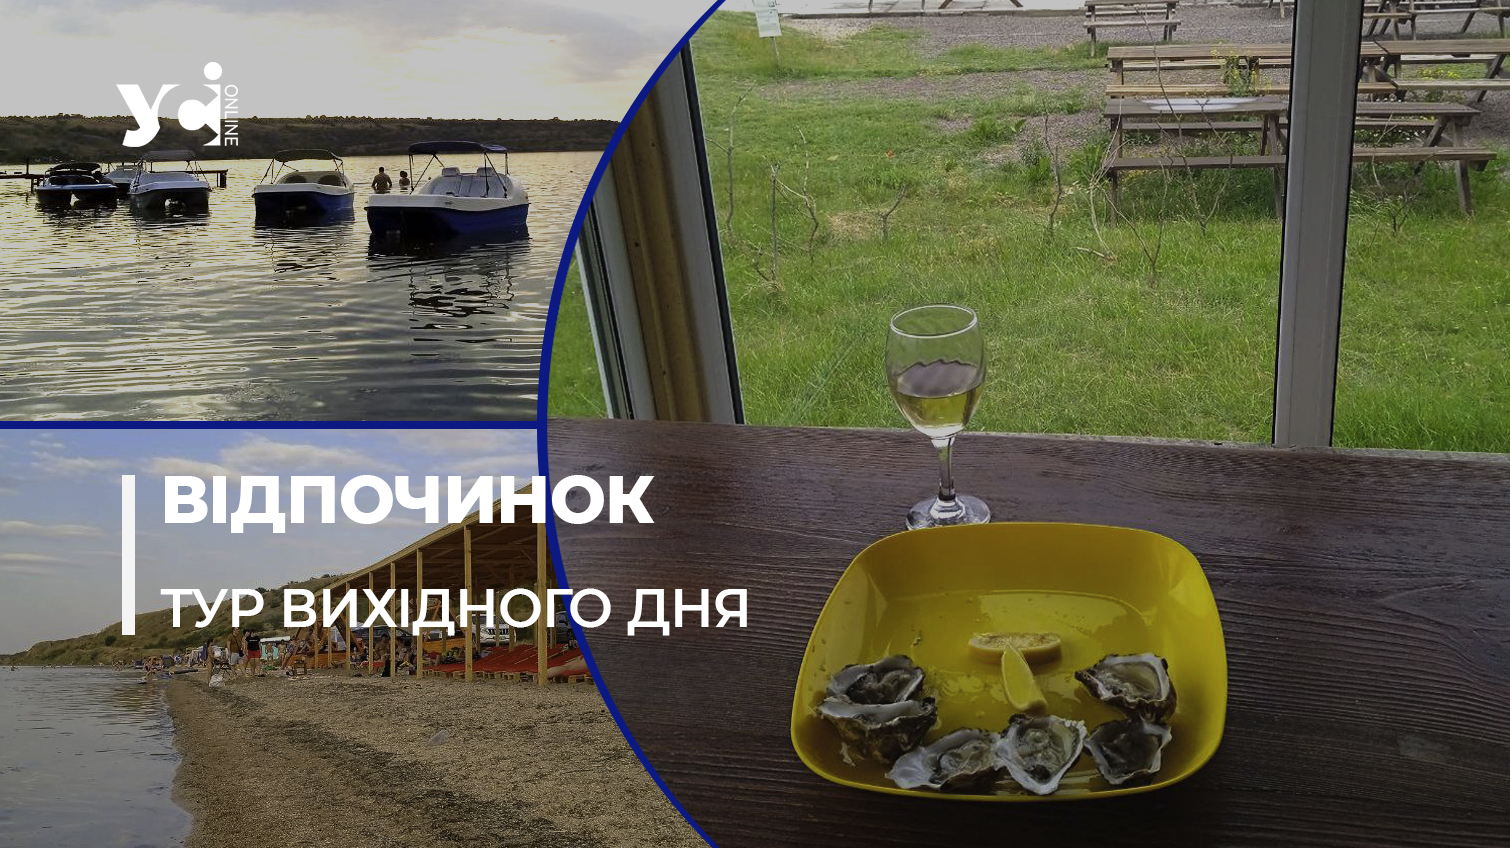 Устриці, ліман, катакомби: як безпечно відпочити біля Одеси (фото) «фото»